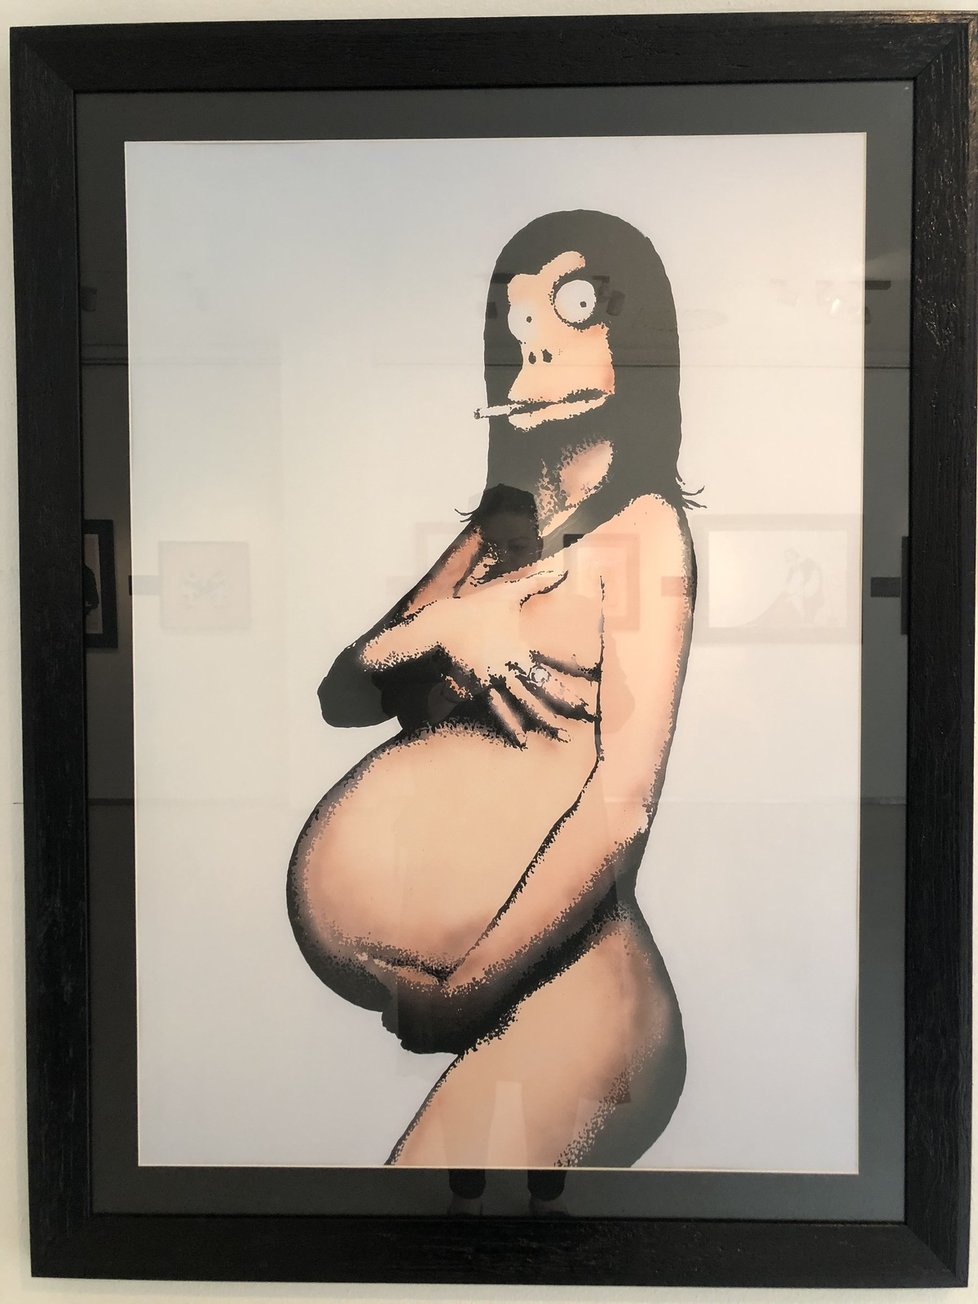 Výstava v Mánesu ukazuje nejznámější Banksyho díla. Jsou to však kopie